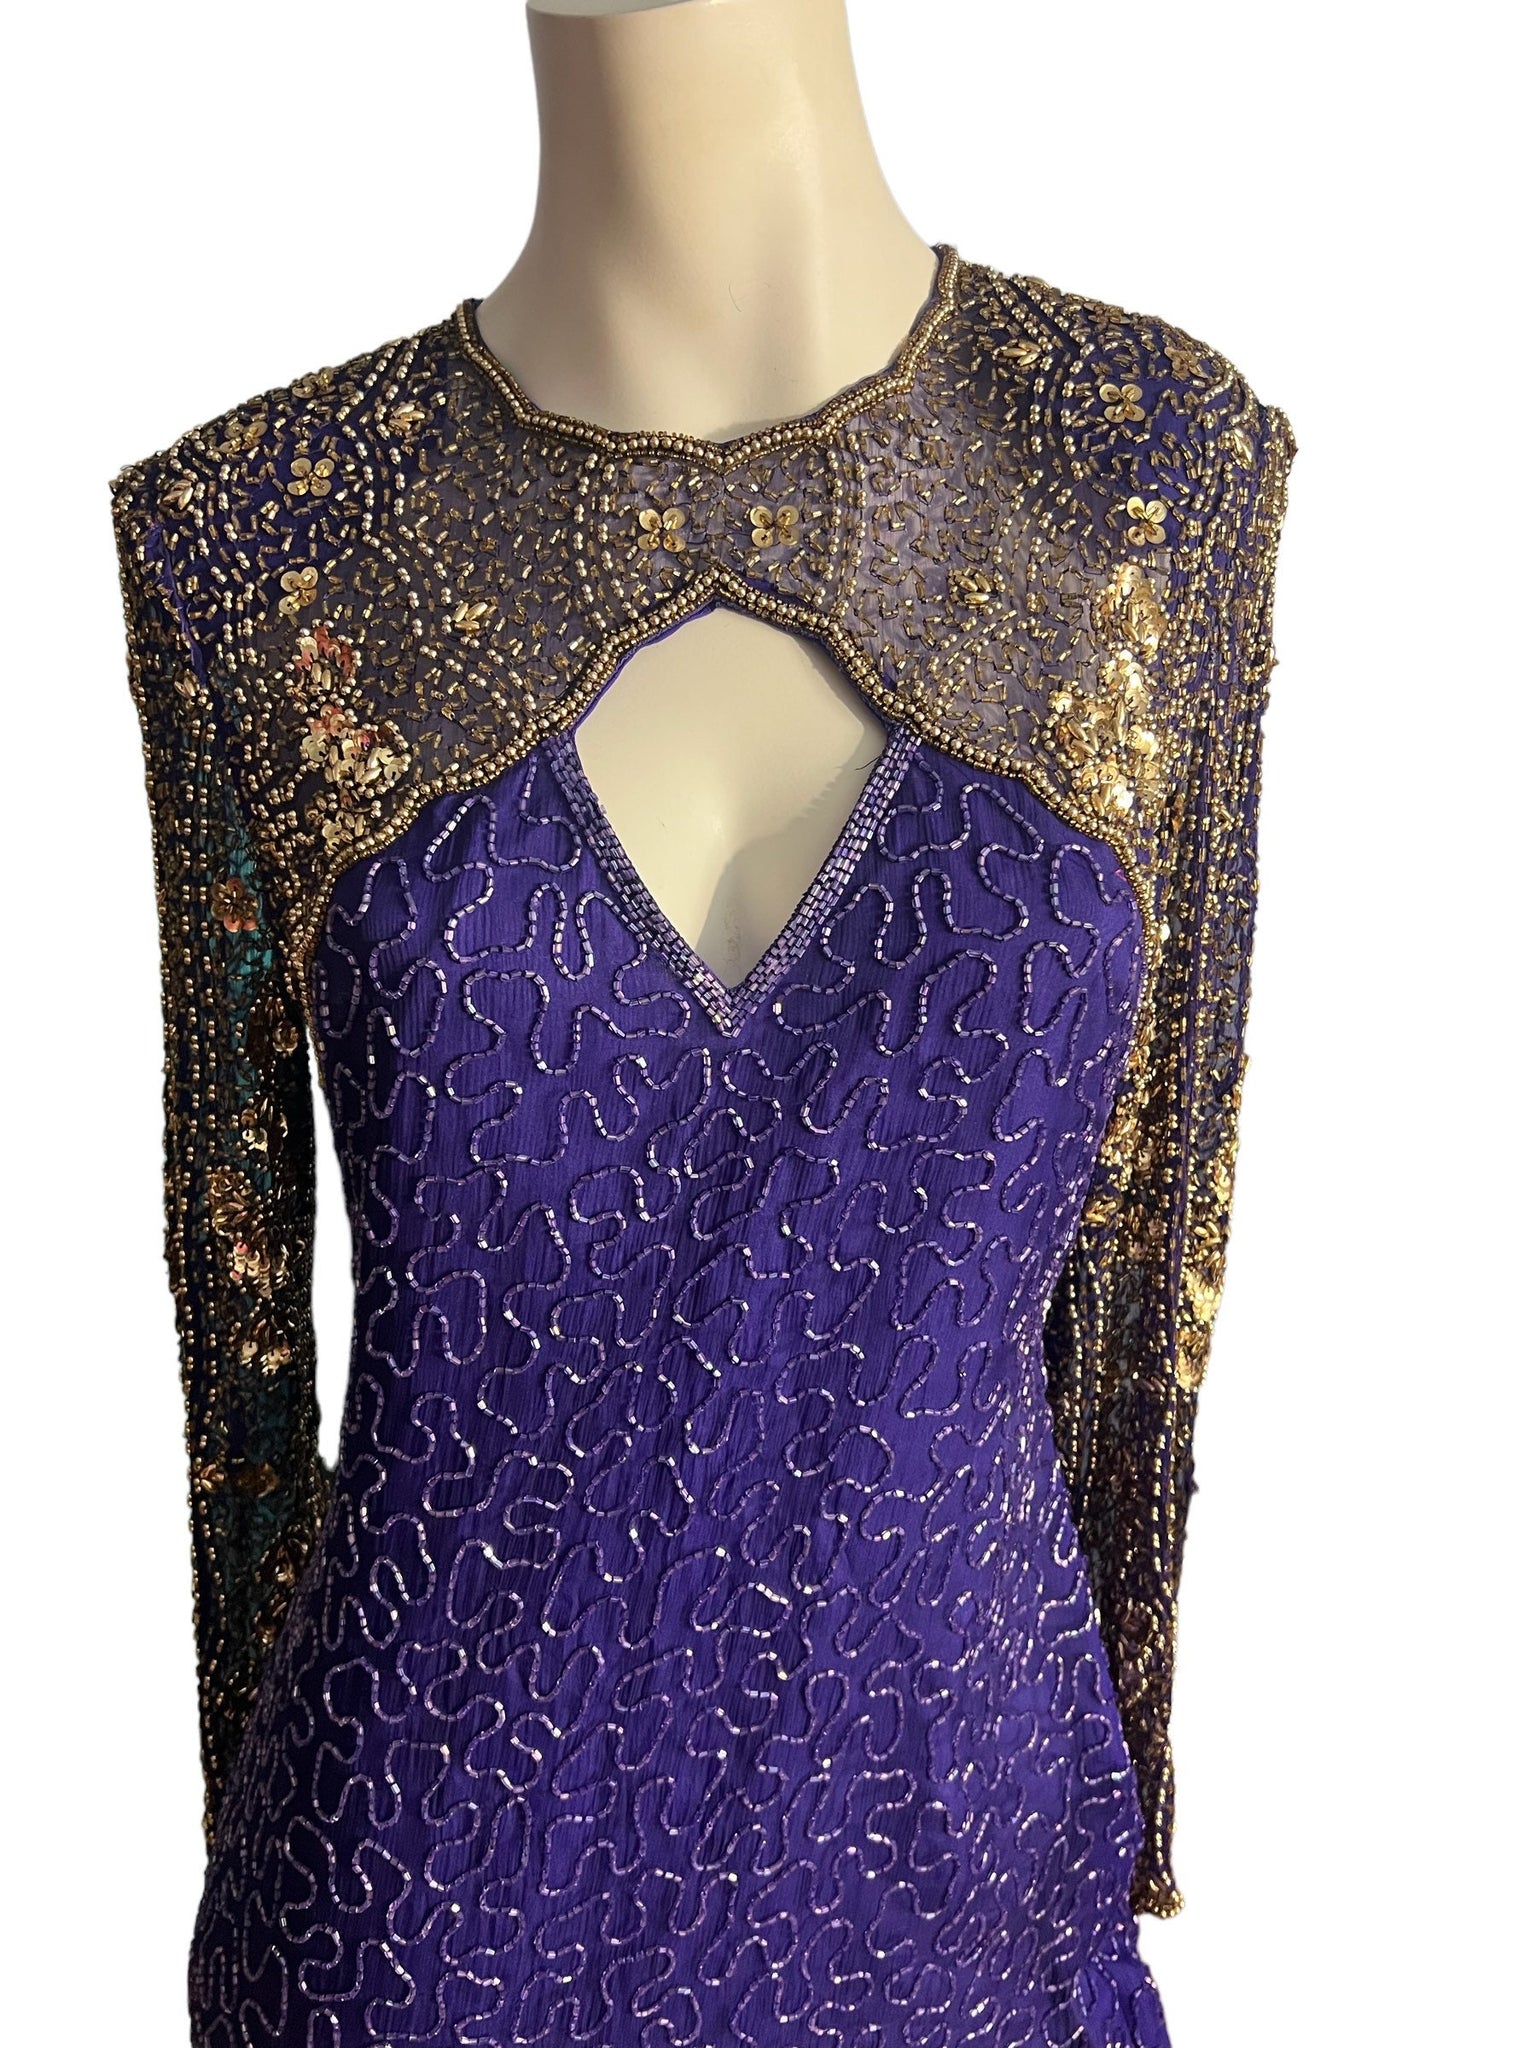 Vintage 80's purple gold sequin bead dress M